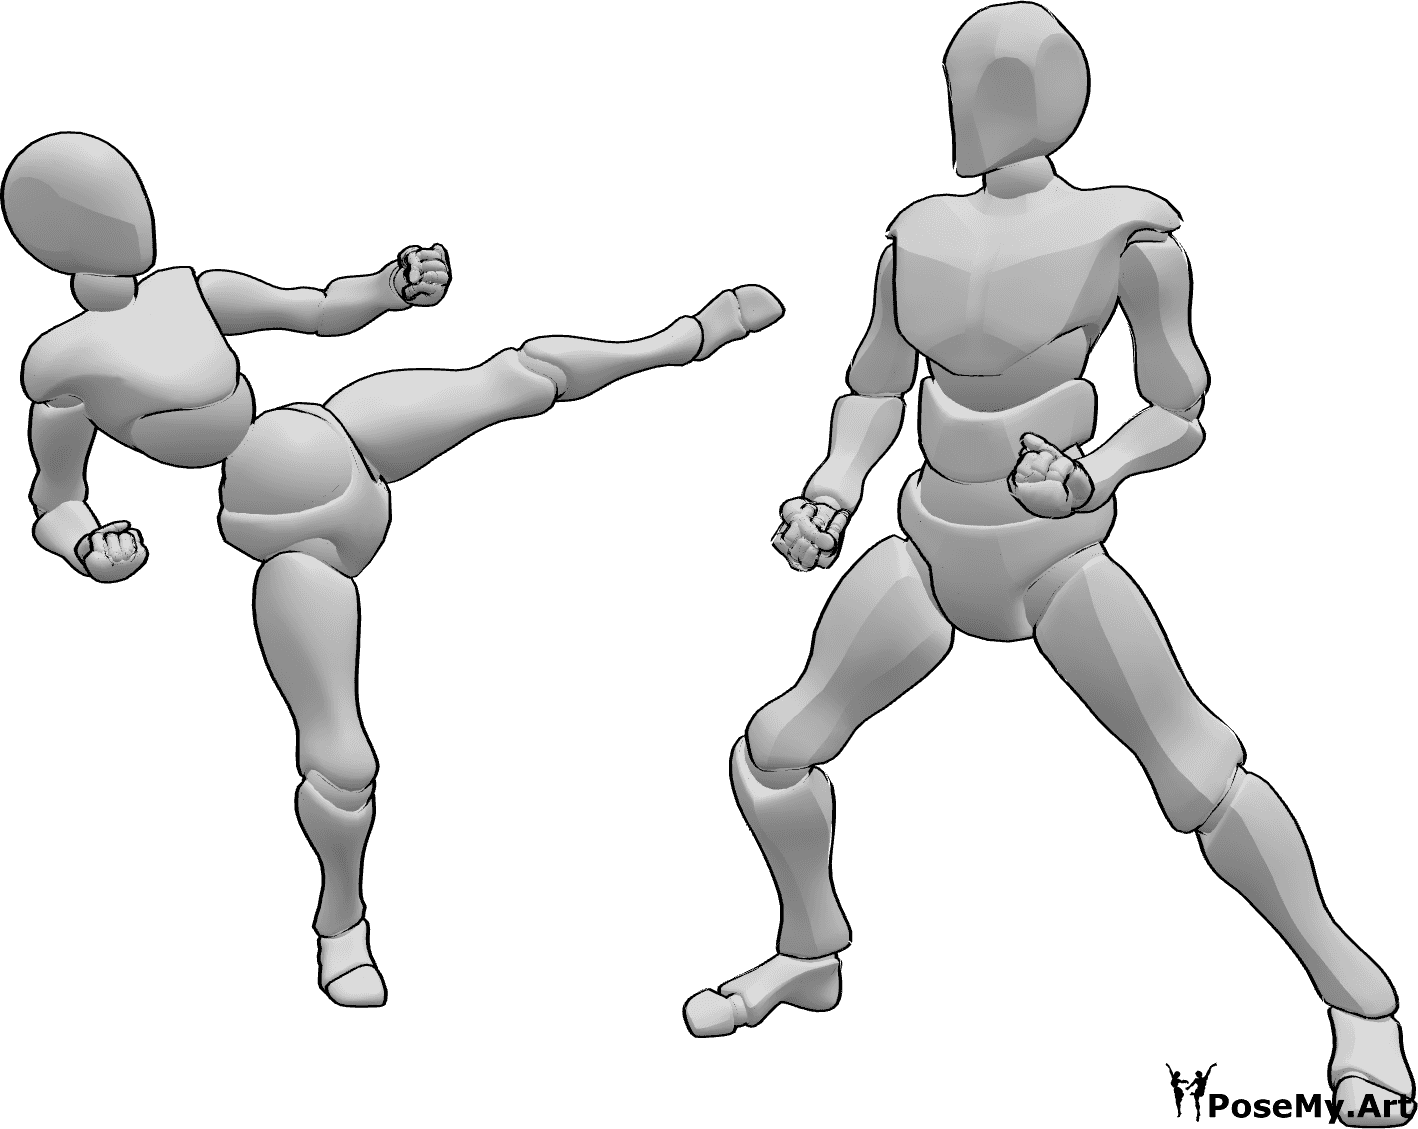 Referencia de poses- Postura de karate masculino femenino - Mujer y hombre están luchando, pose de karate